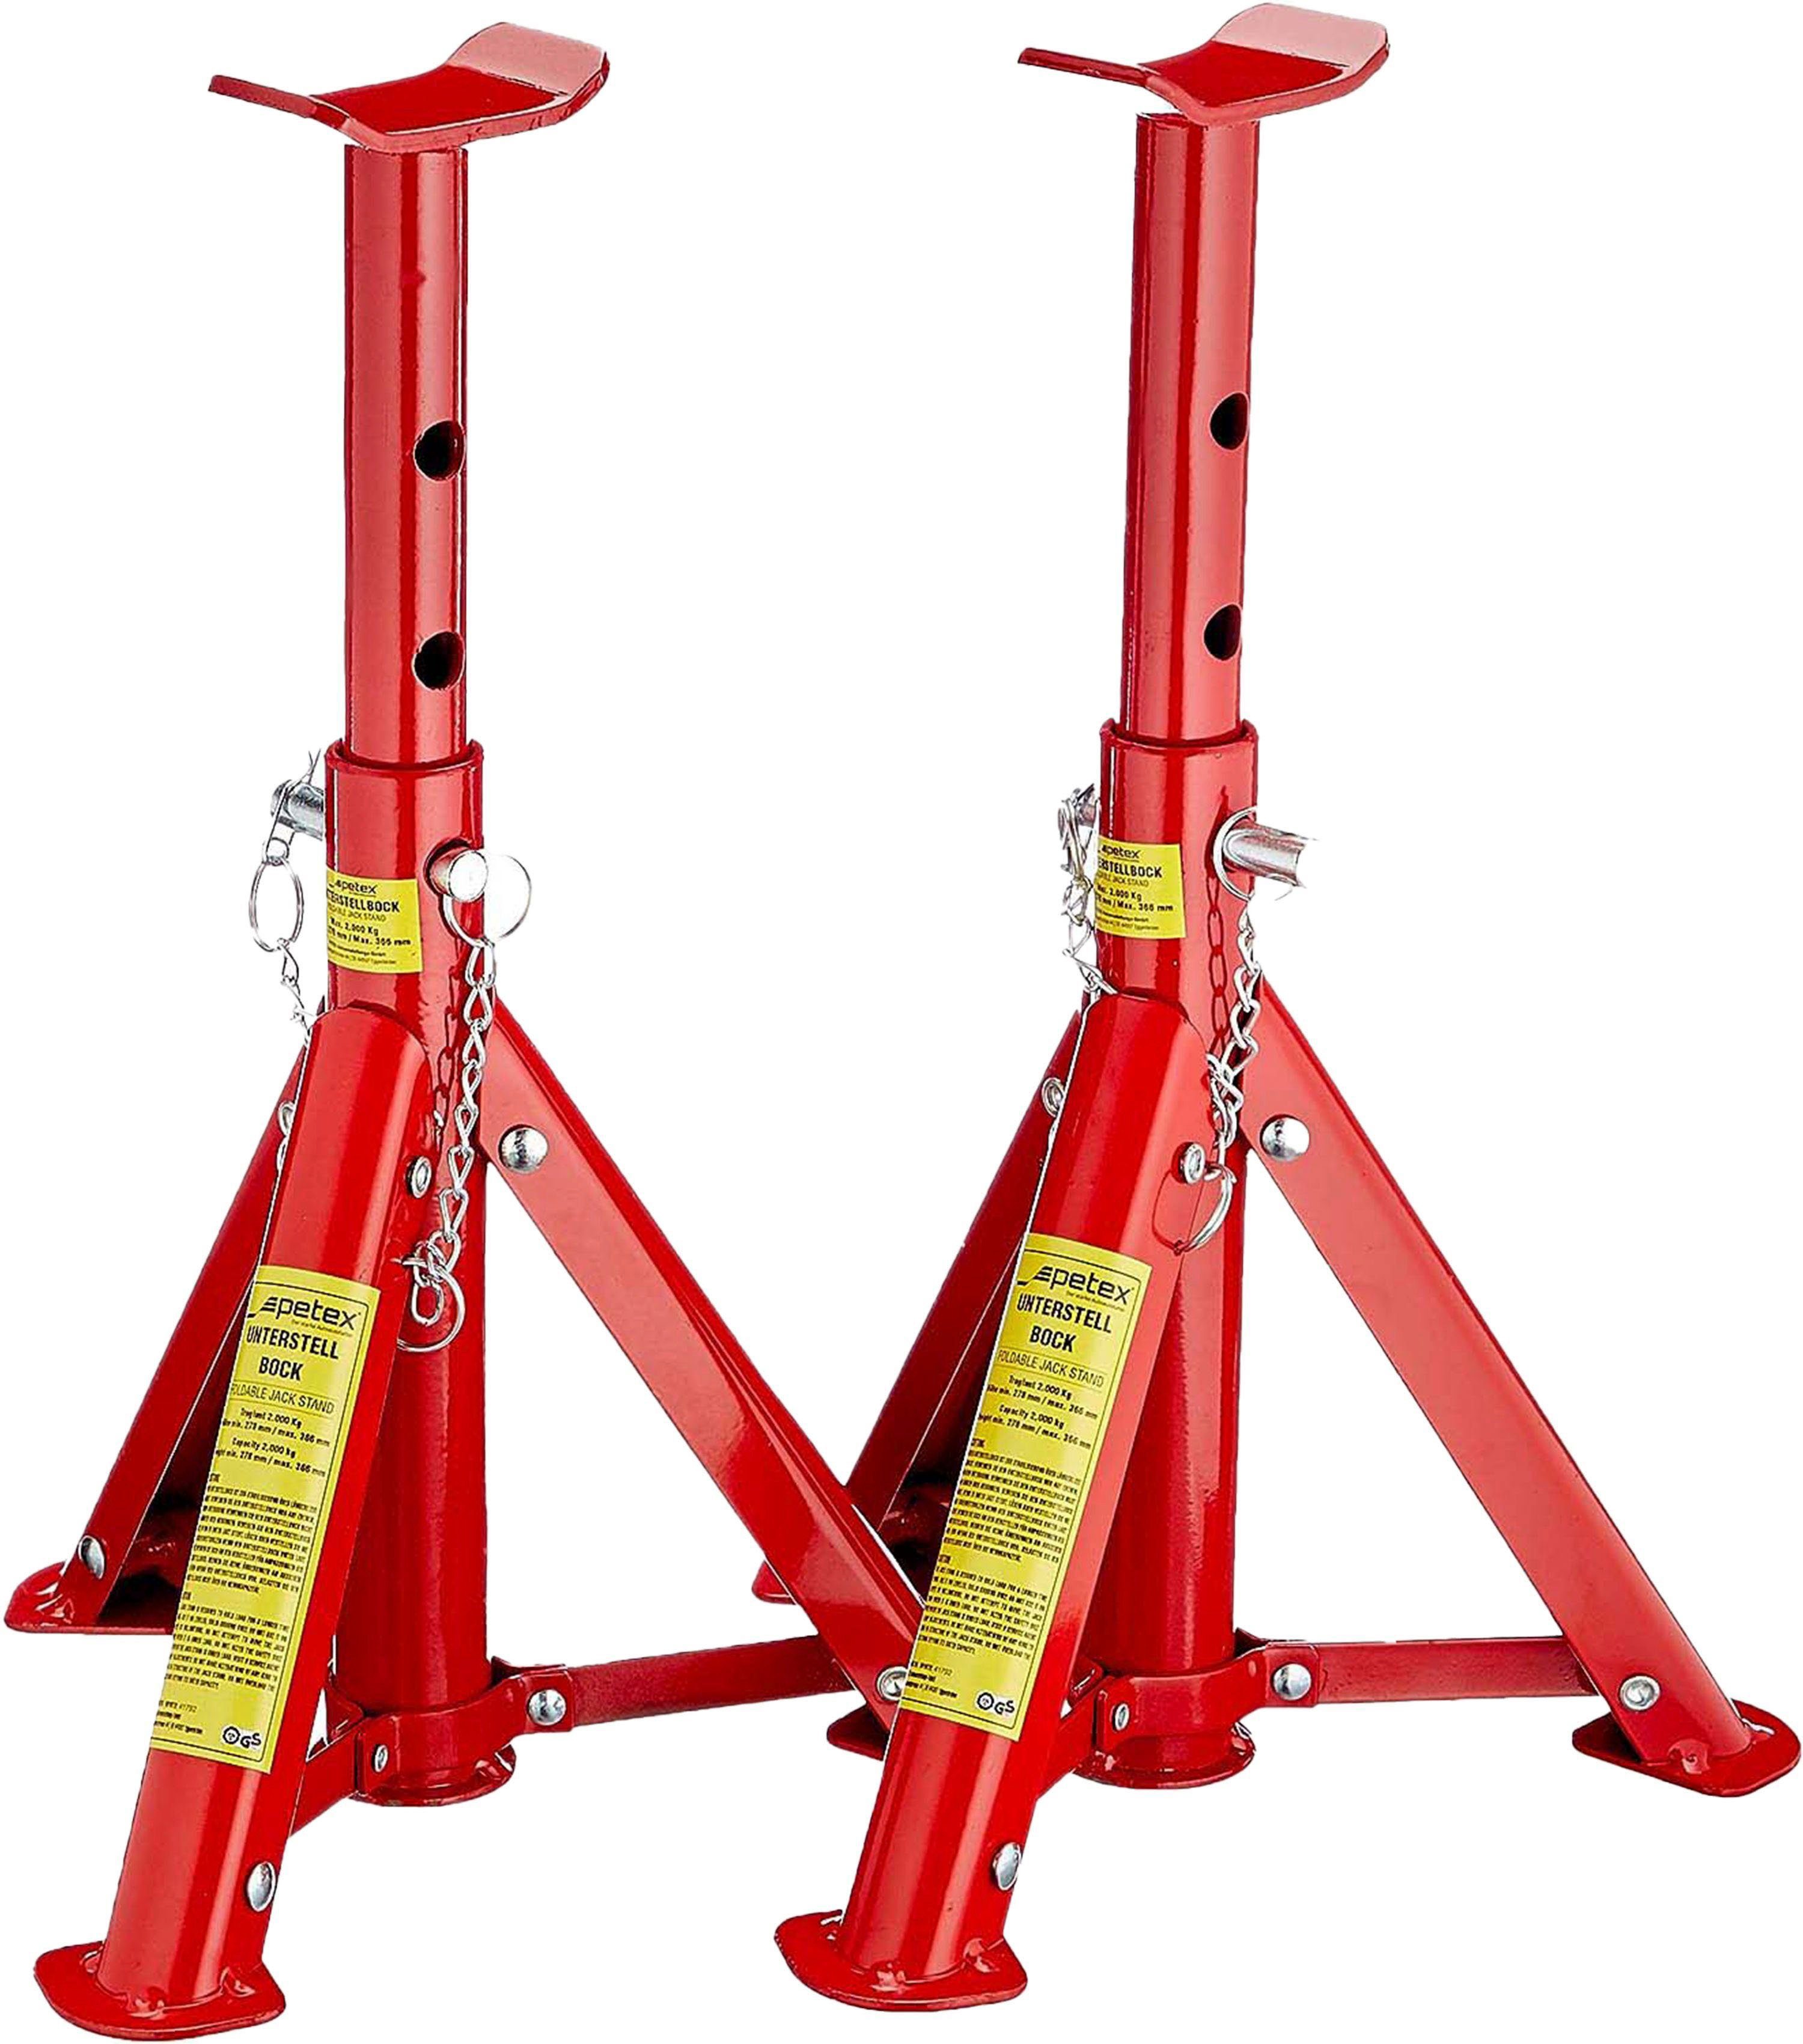 Petex Unterstellbock mit Sicherungssplint, höhenverstellbar und faltbar, 2er Set, Tragkraft: 3 Tonnen, rot